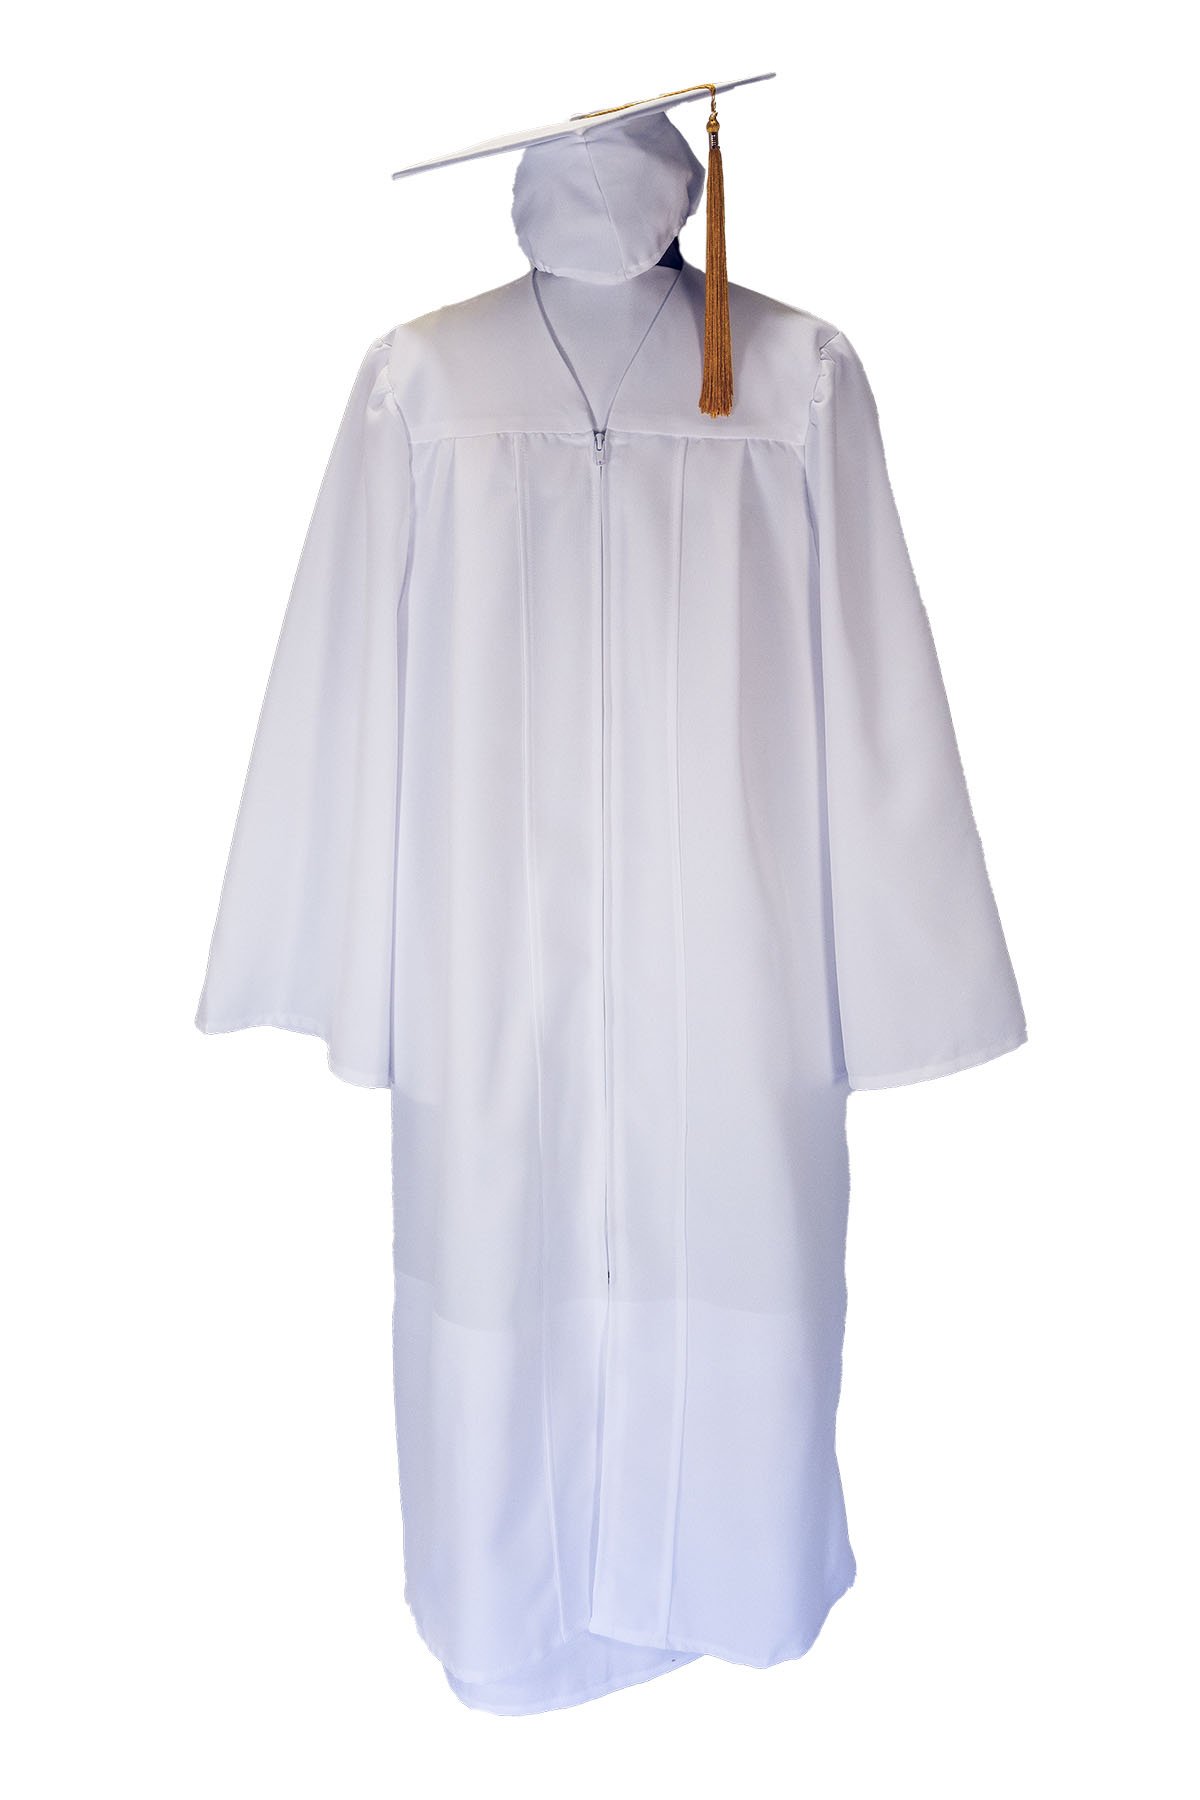 Premium Matte Graduation Cap,Gown & Tassel Package - 12 Colors Available